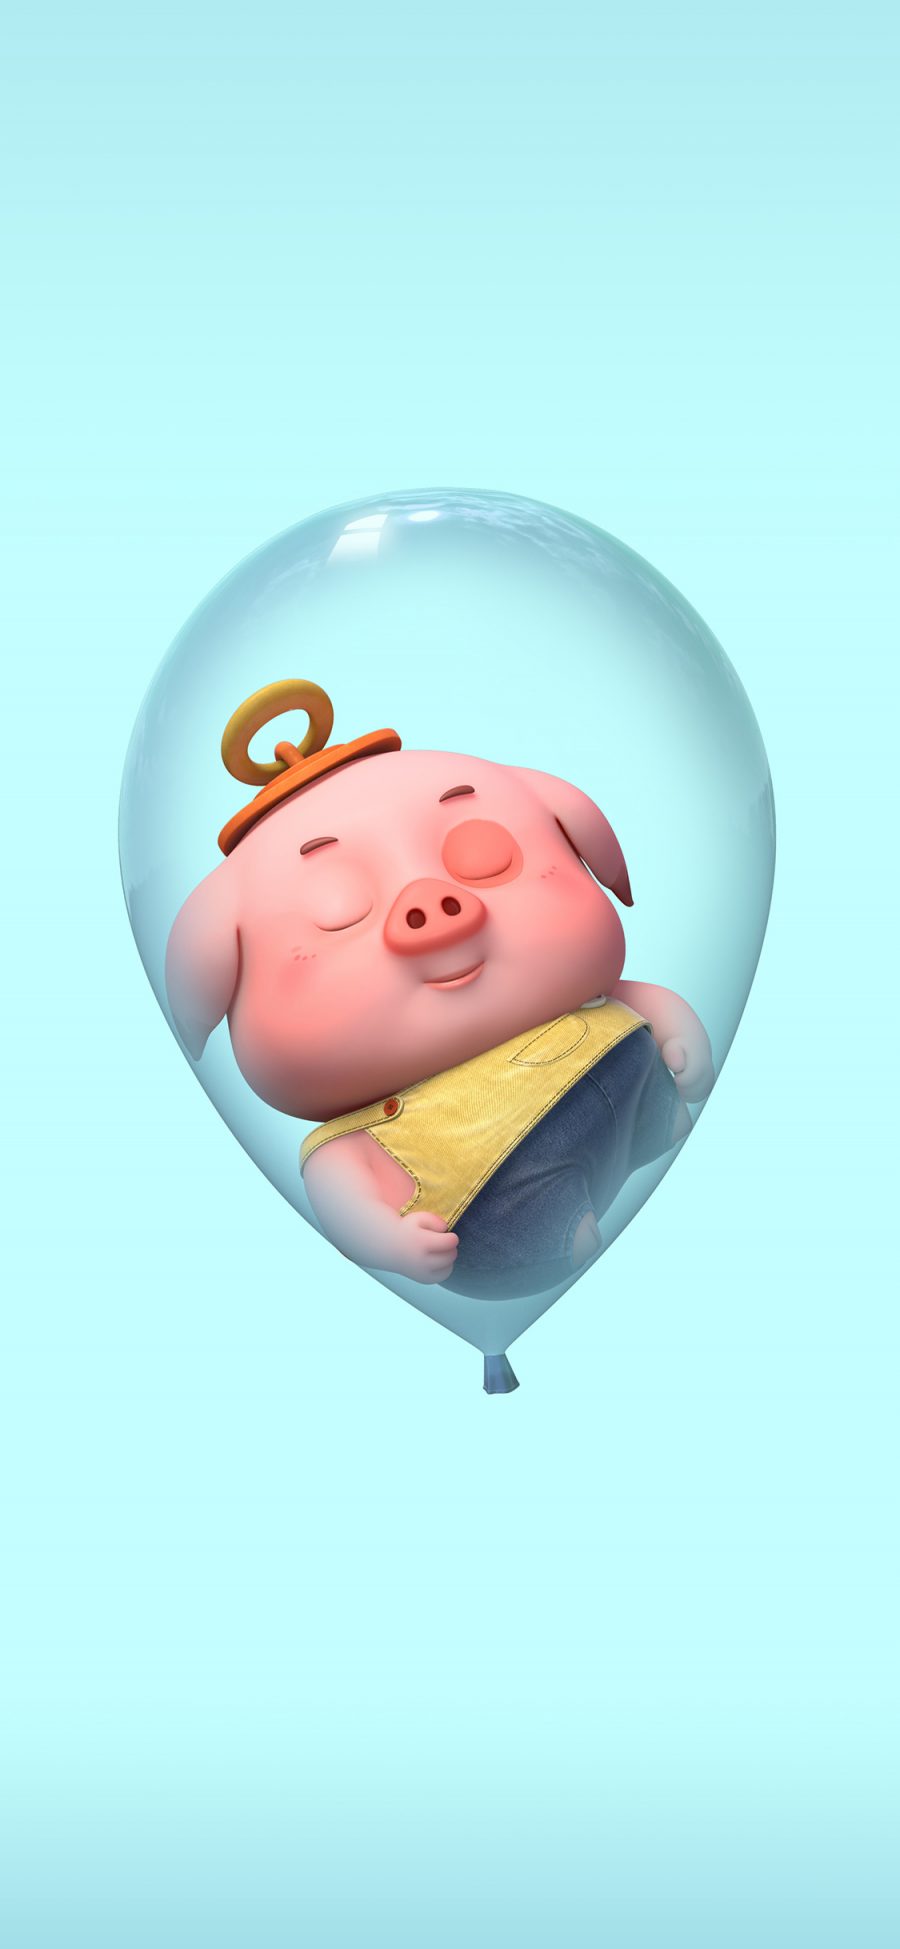 [2436×1125]豆豆猪 可爱 卡通 气球 睡梦 苹果手机动漫壁纸图片